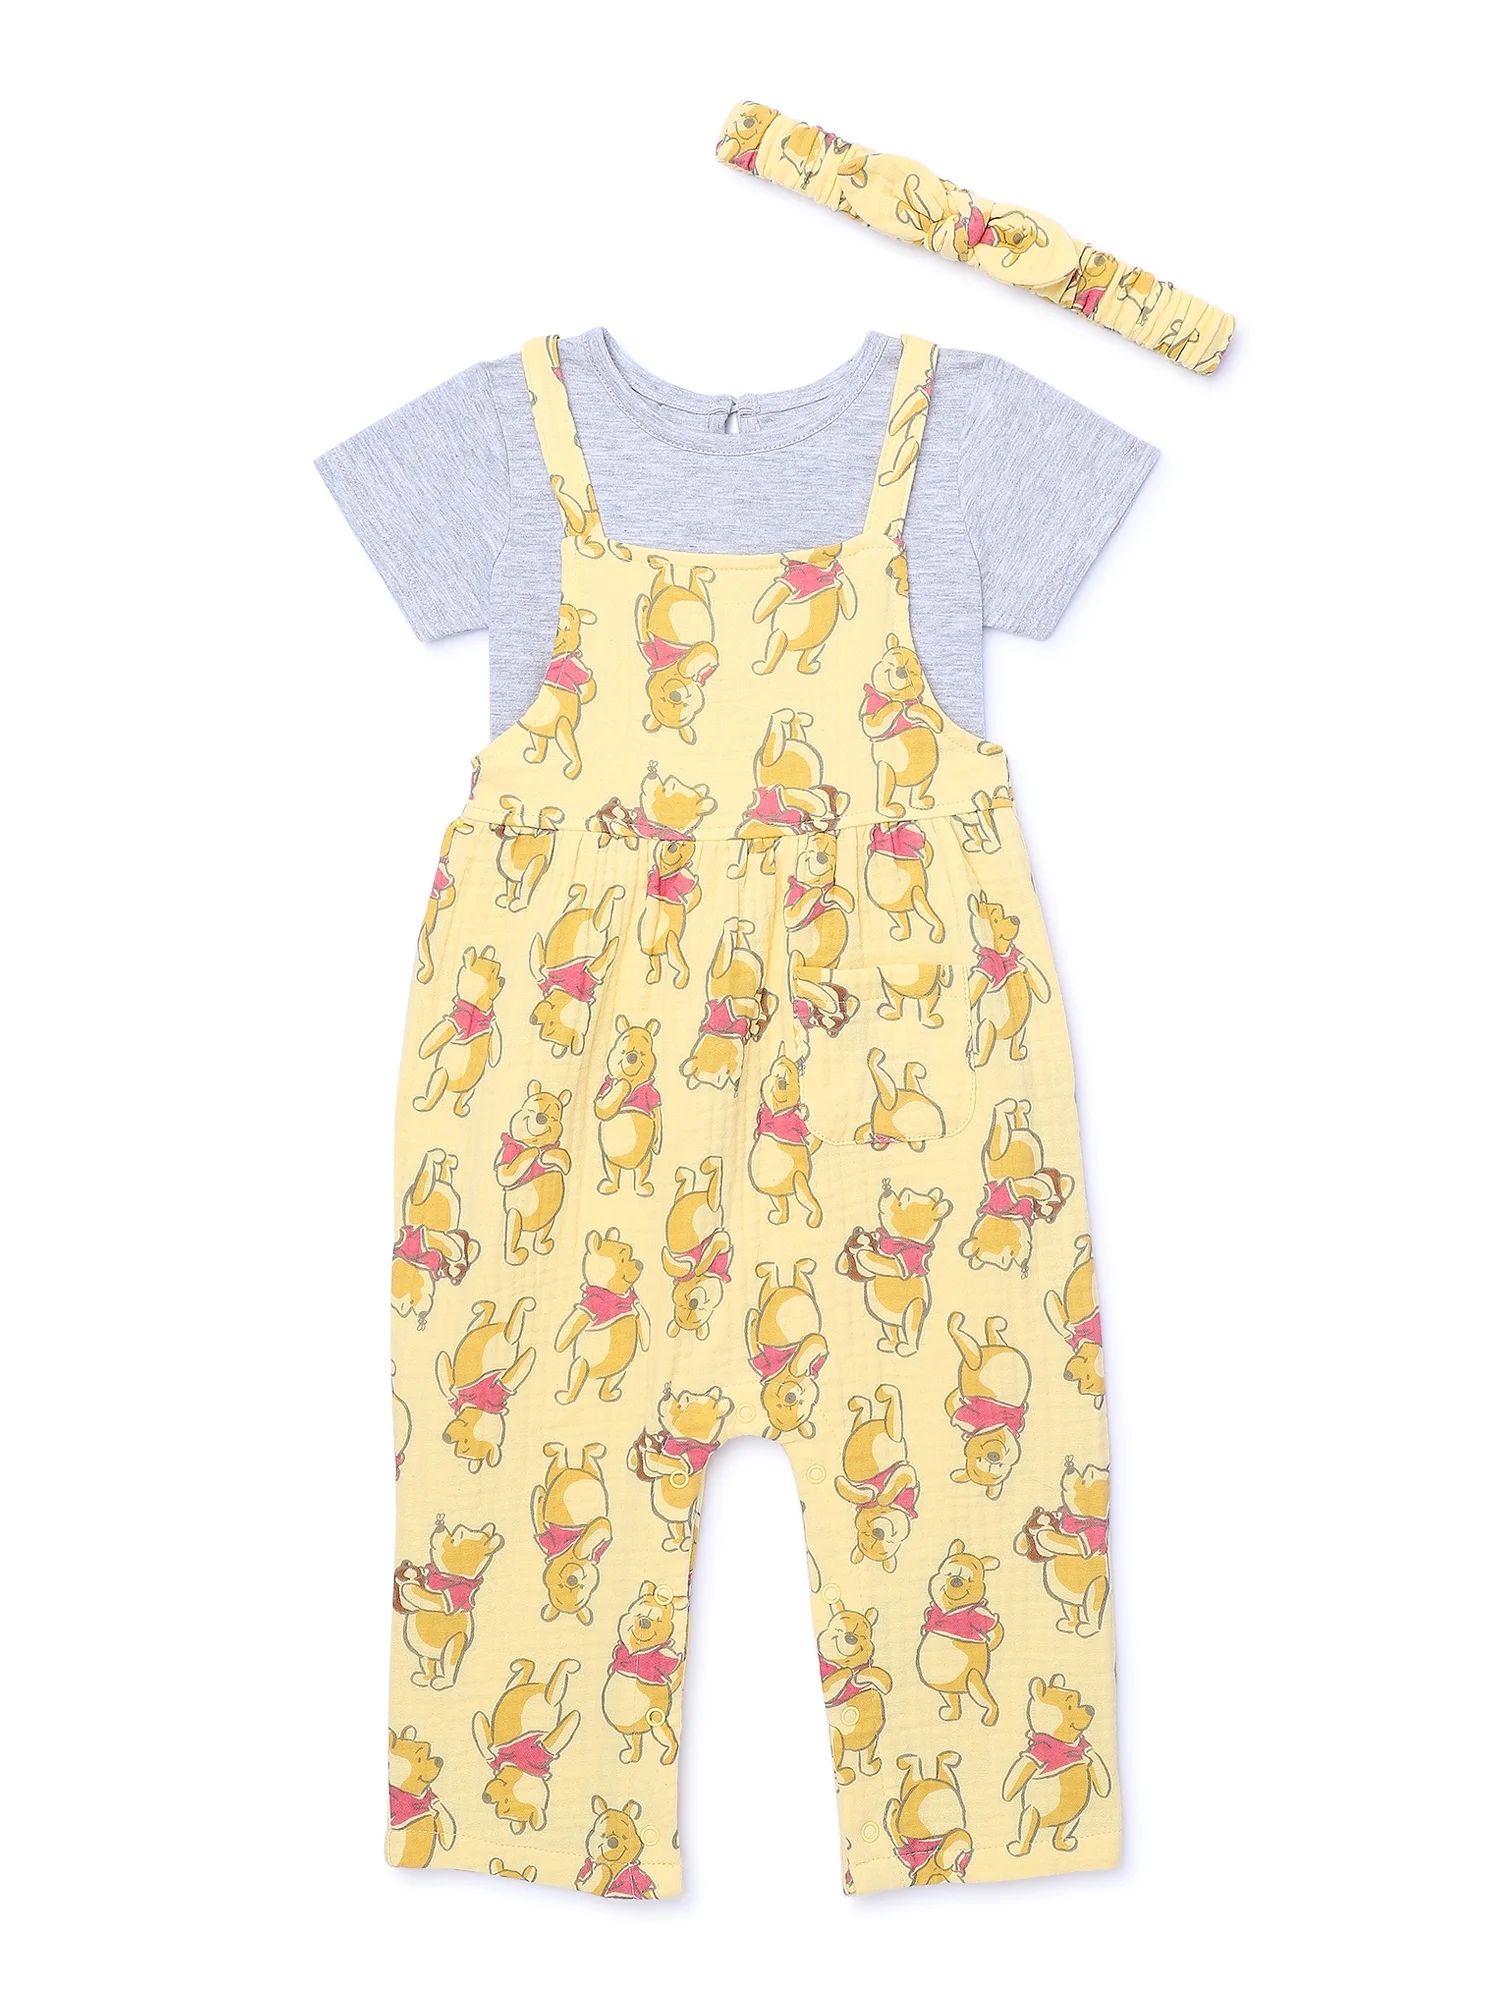 Winnie the Pooh Baby Girls Romper Set, 3-Piece, Sizes 0/3M-24M | Walmart (US)